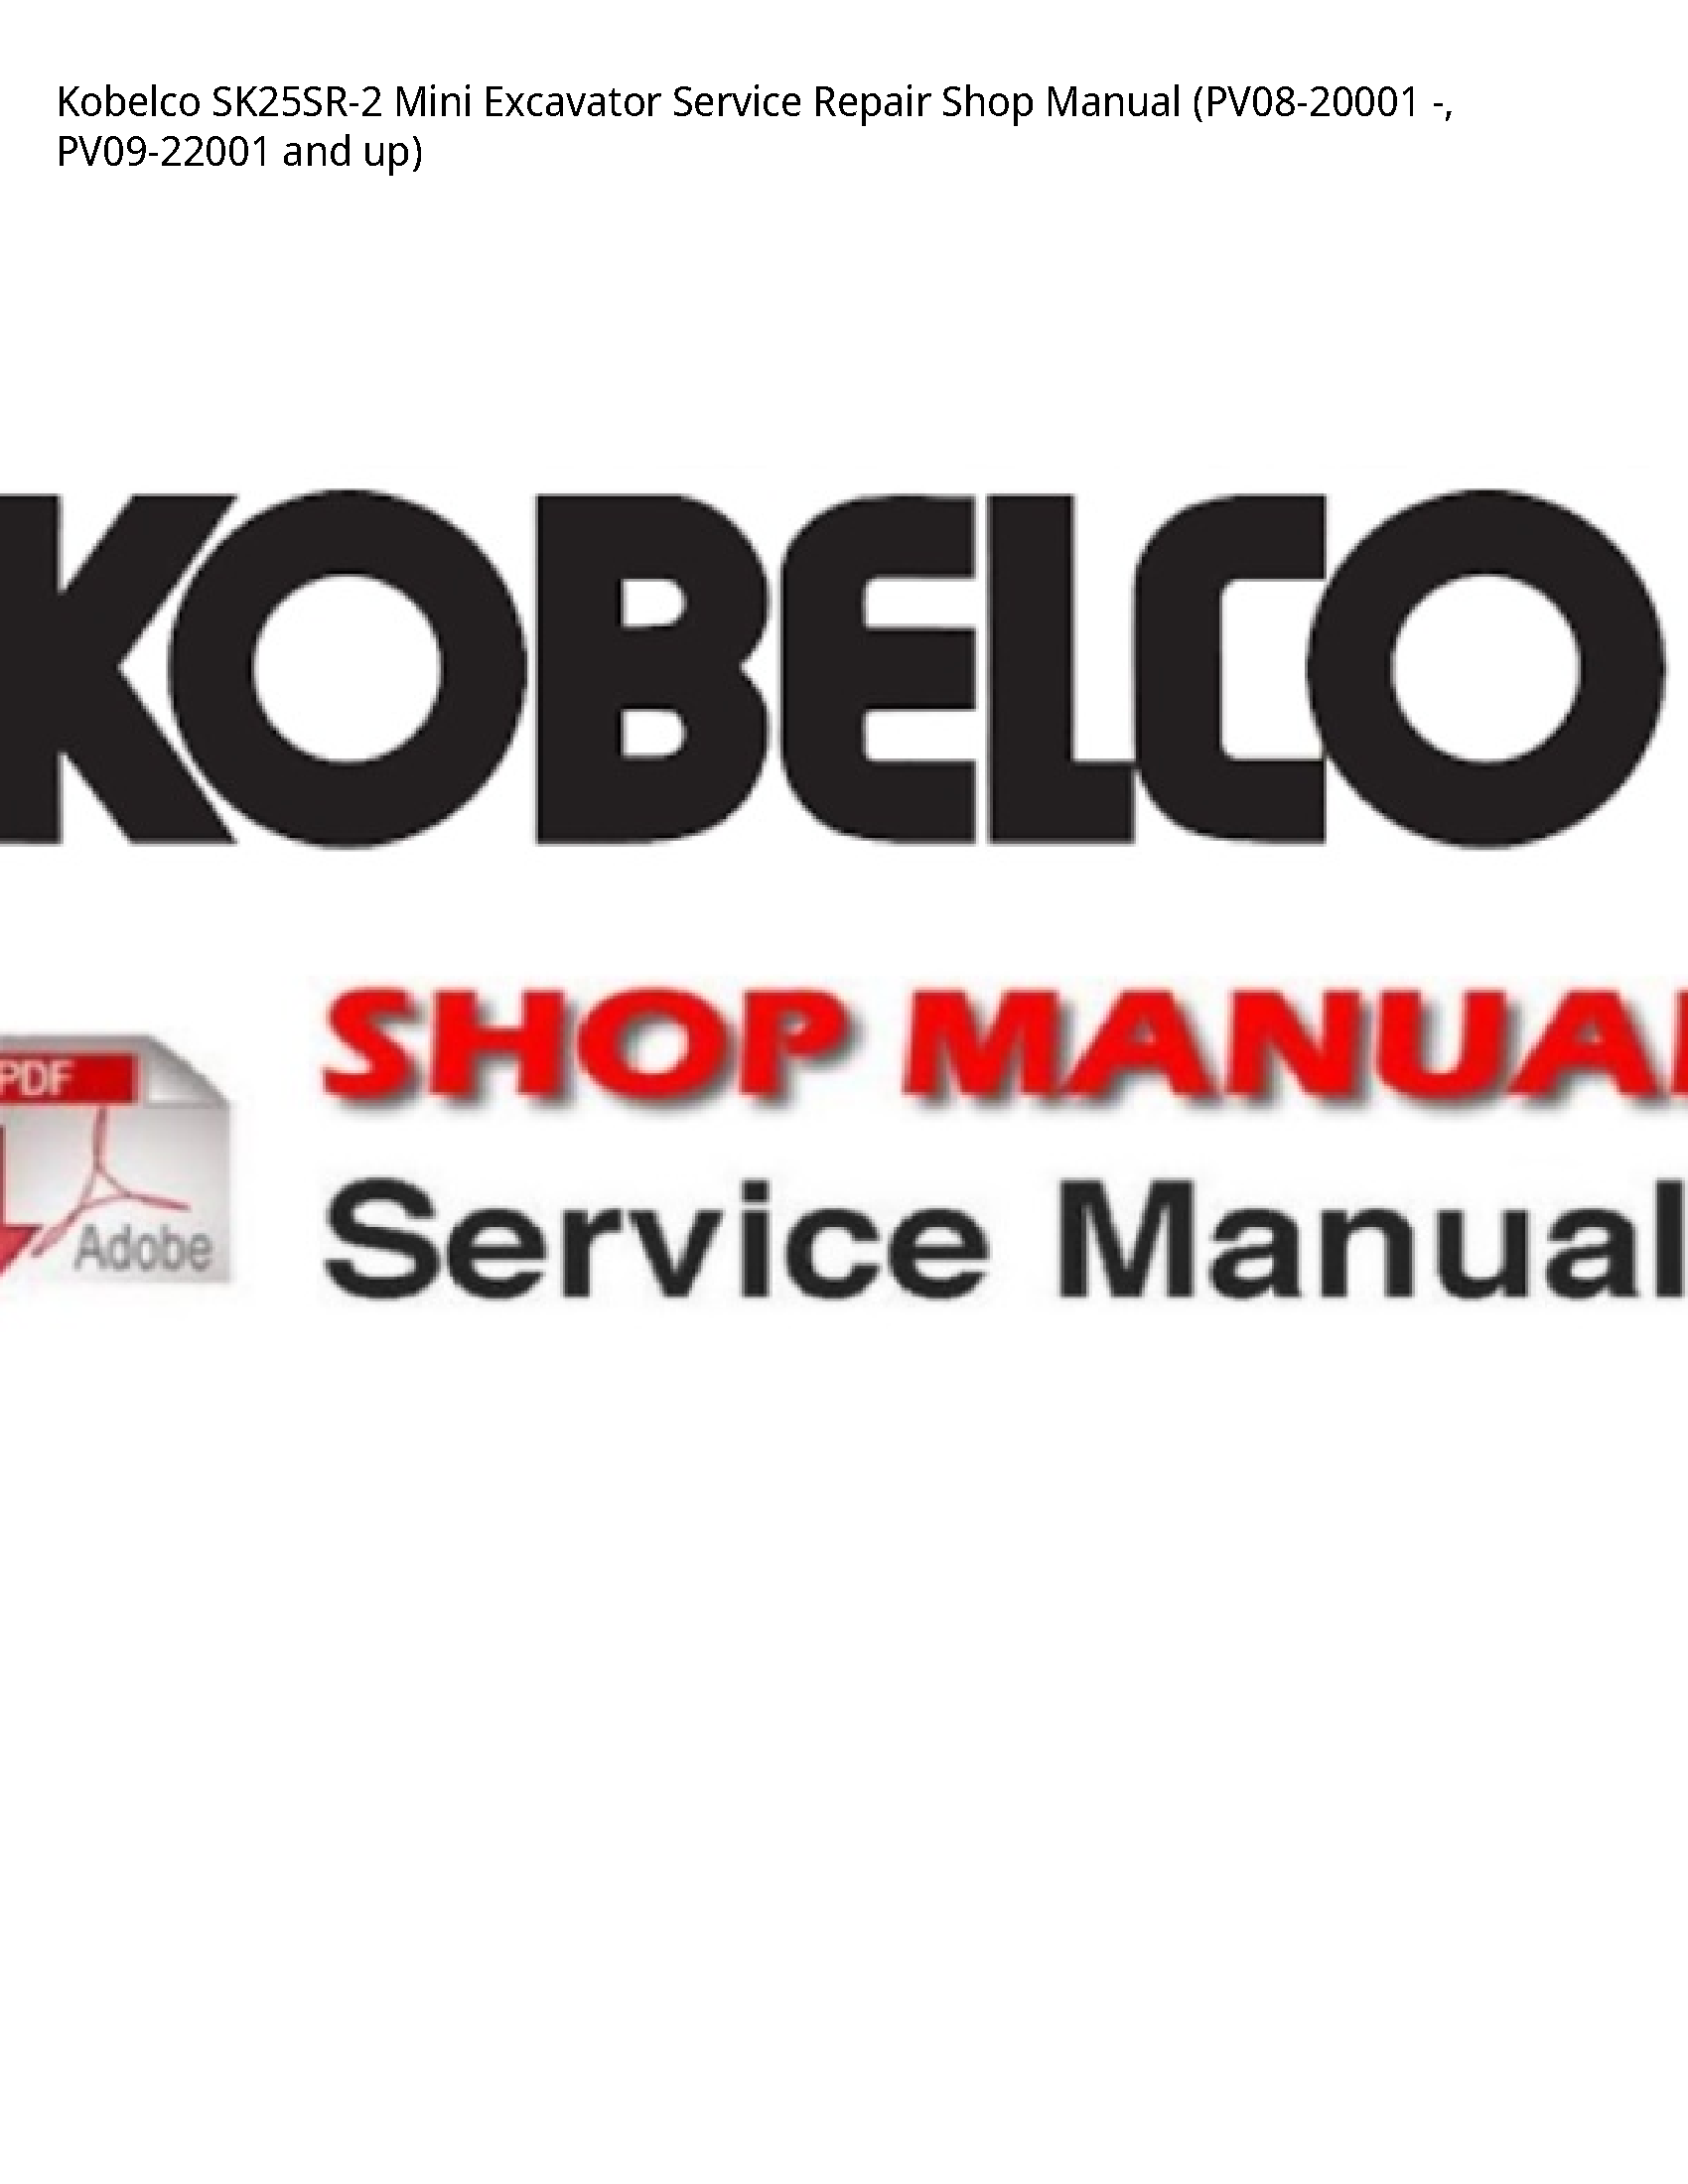 Kobelco SK25SR-2 Mini Excavator manual